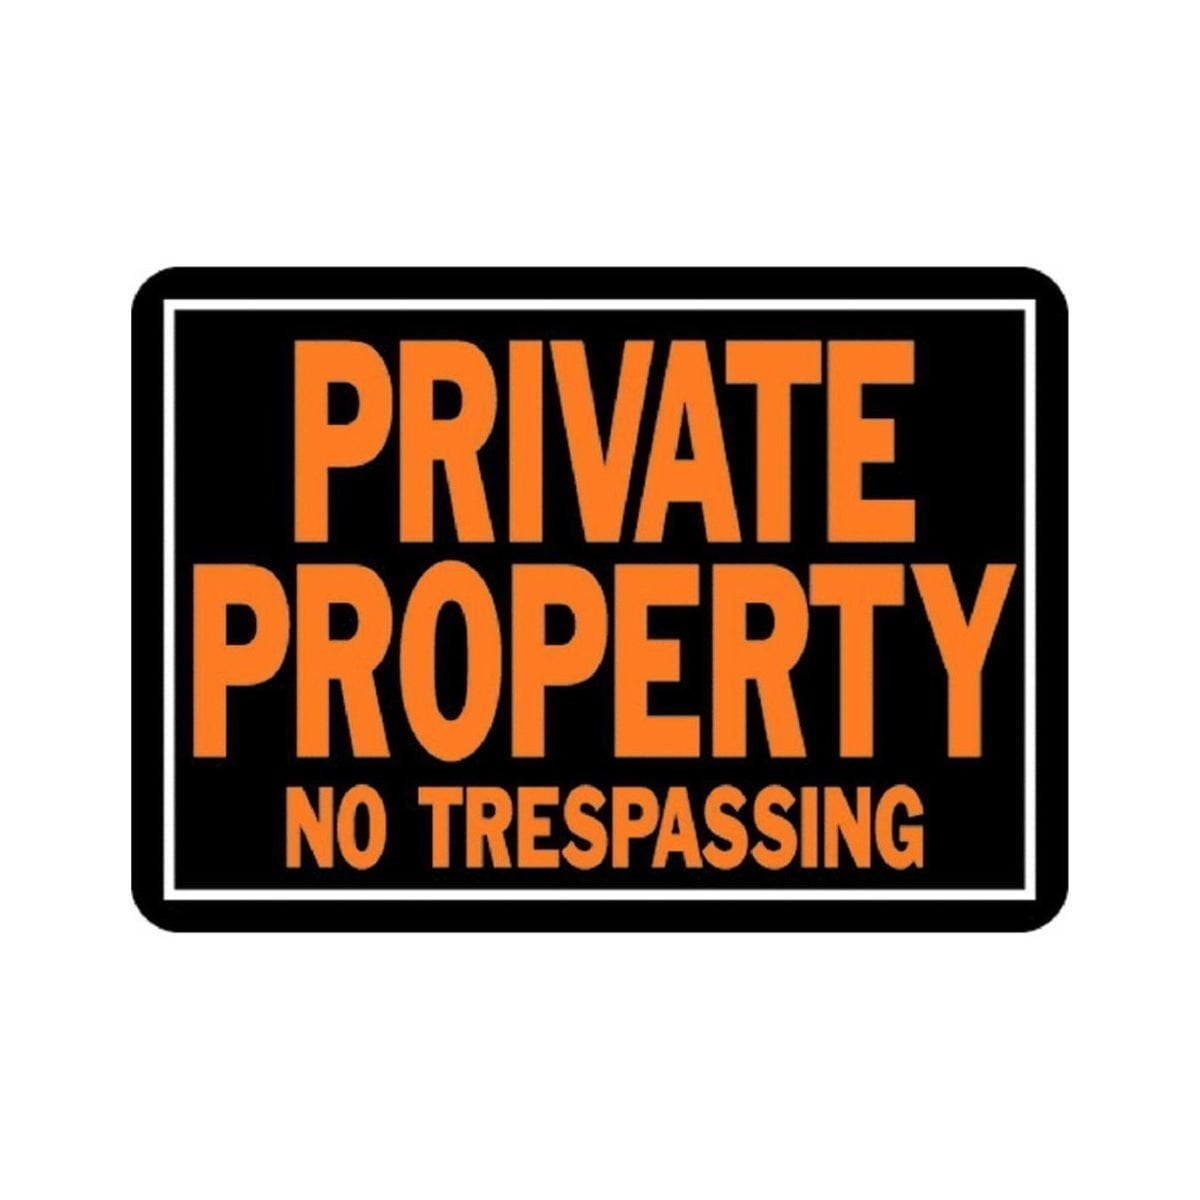 Private 14. Trespassing. Приват наклейка. Private property. Private property картинки.